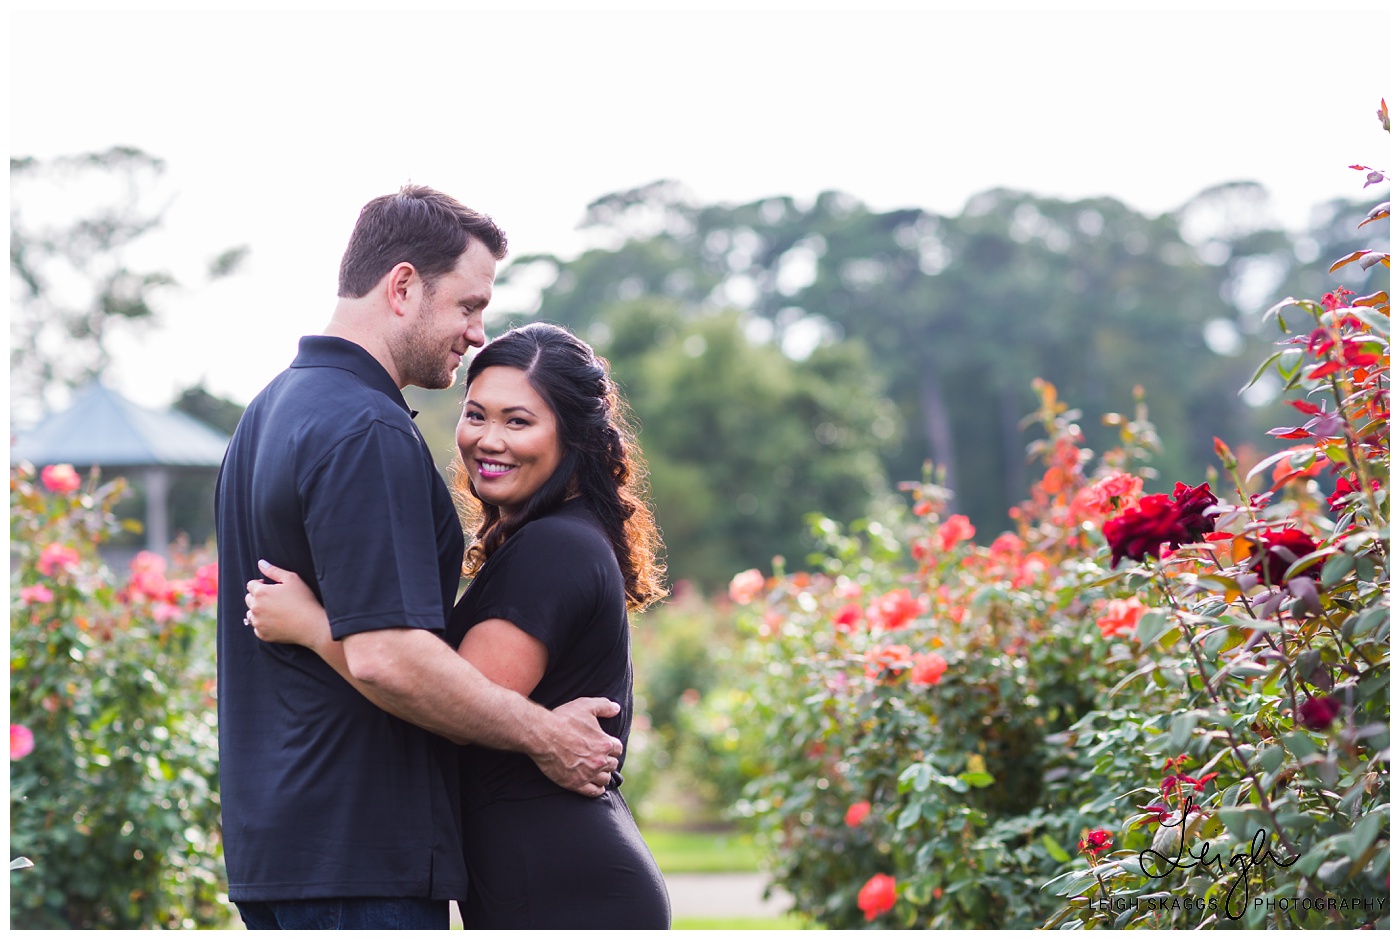 Alyson & Jared | Norfolk Botanical Garden Engagement